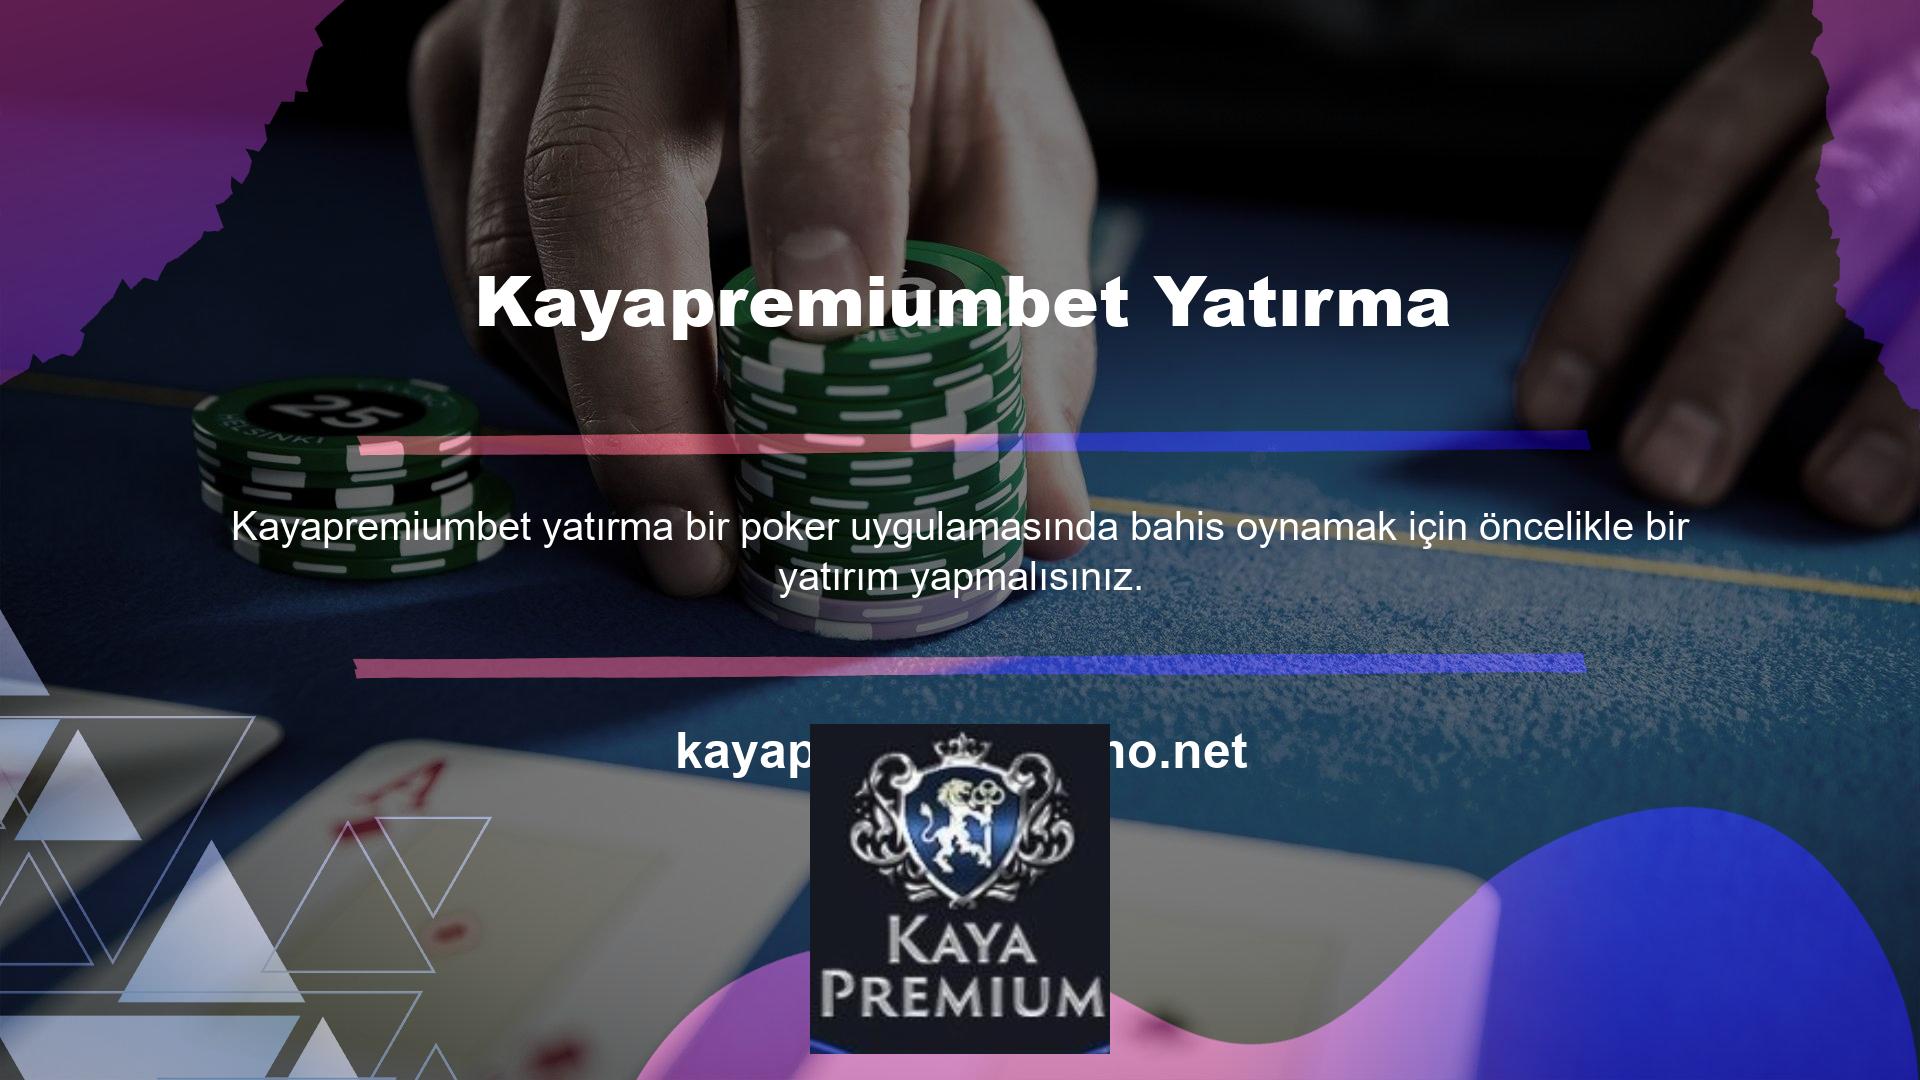 Yatırımlarla ilgili olarak site, kullanıcılara paralarını Kayapremiumbet Poker' e emanet etmenin güvenli olup olmadığını soruyor